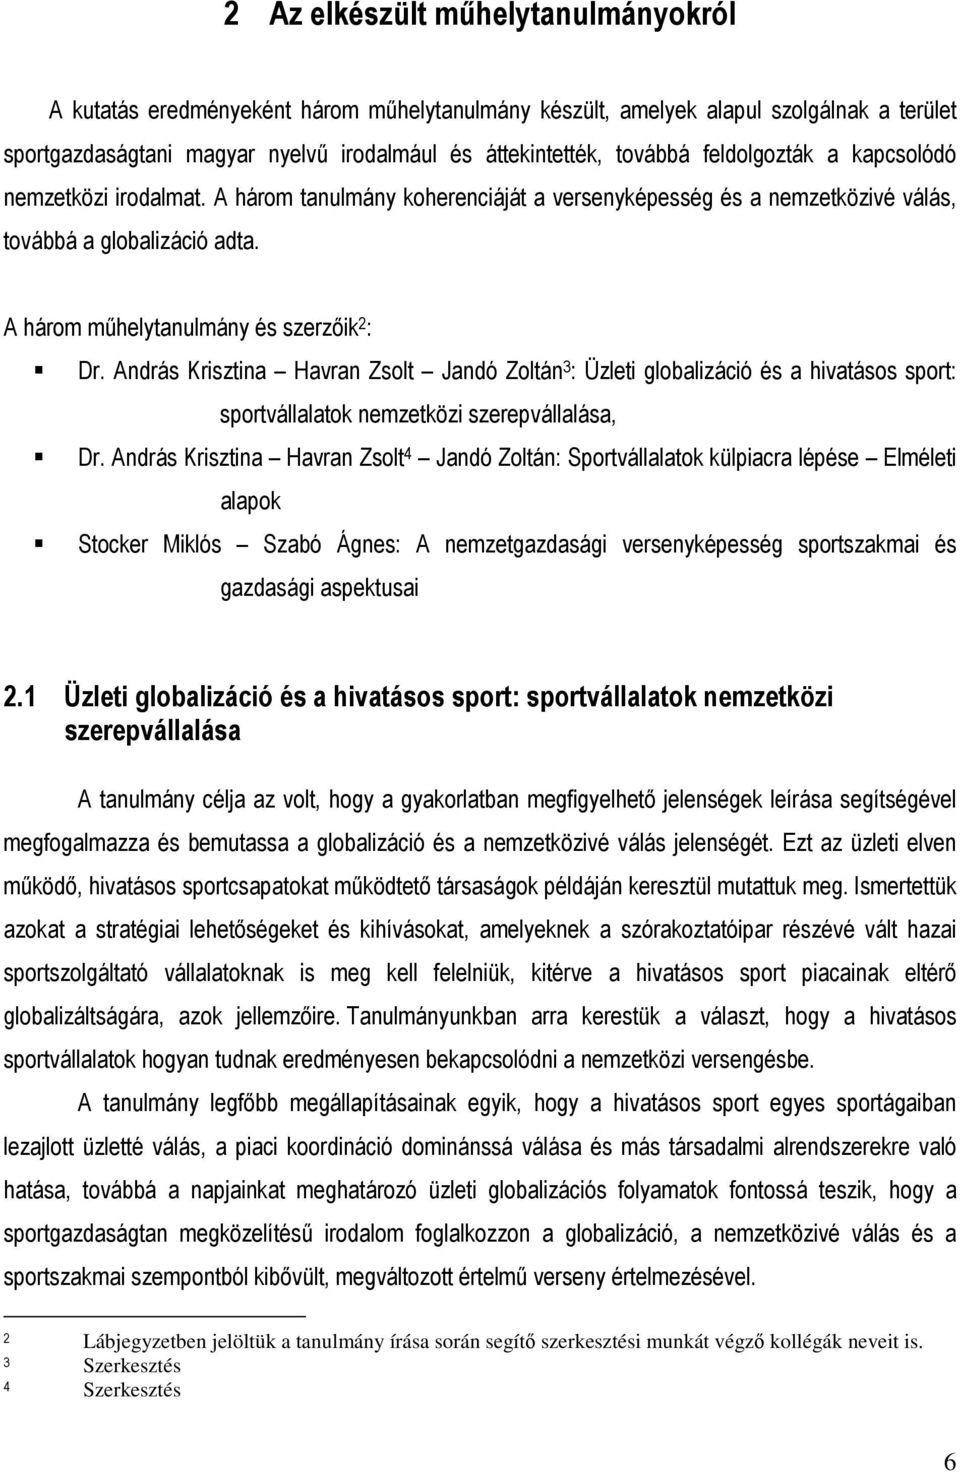 András Krisztina Havran Zsolt Jandó Zoltán 3 : Üzleti globalizáció és a hivatásos sport: sportvállalatok nemzetközi szerepvállalása, Dr.